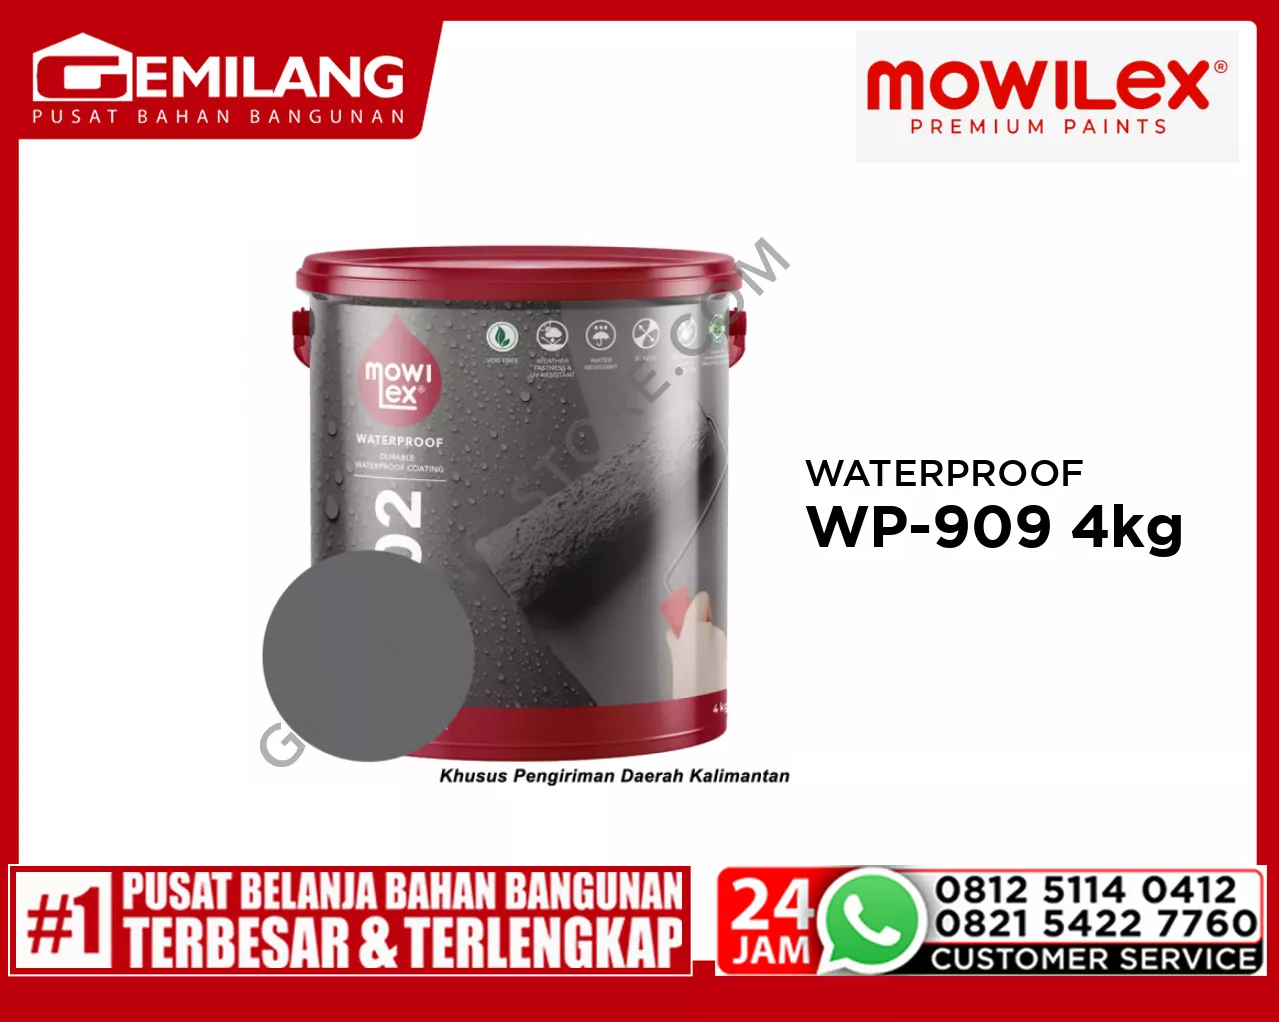 MOWILEX CENDANA WATERPROOF WP-909 MERLIN GREY 4kg